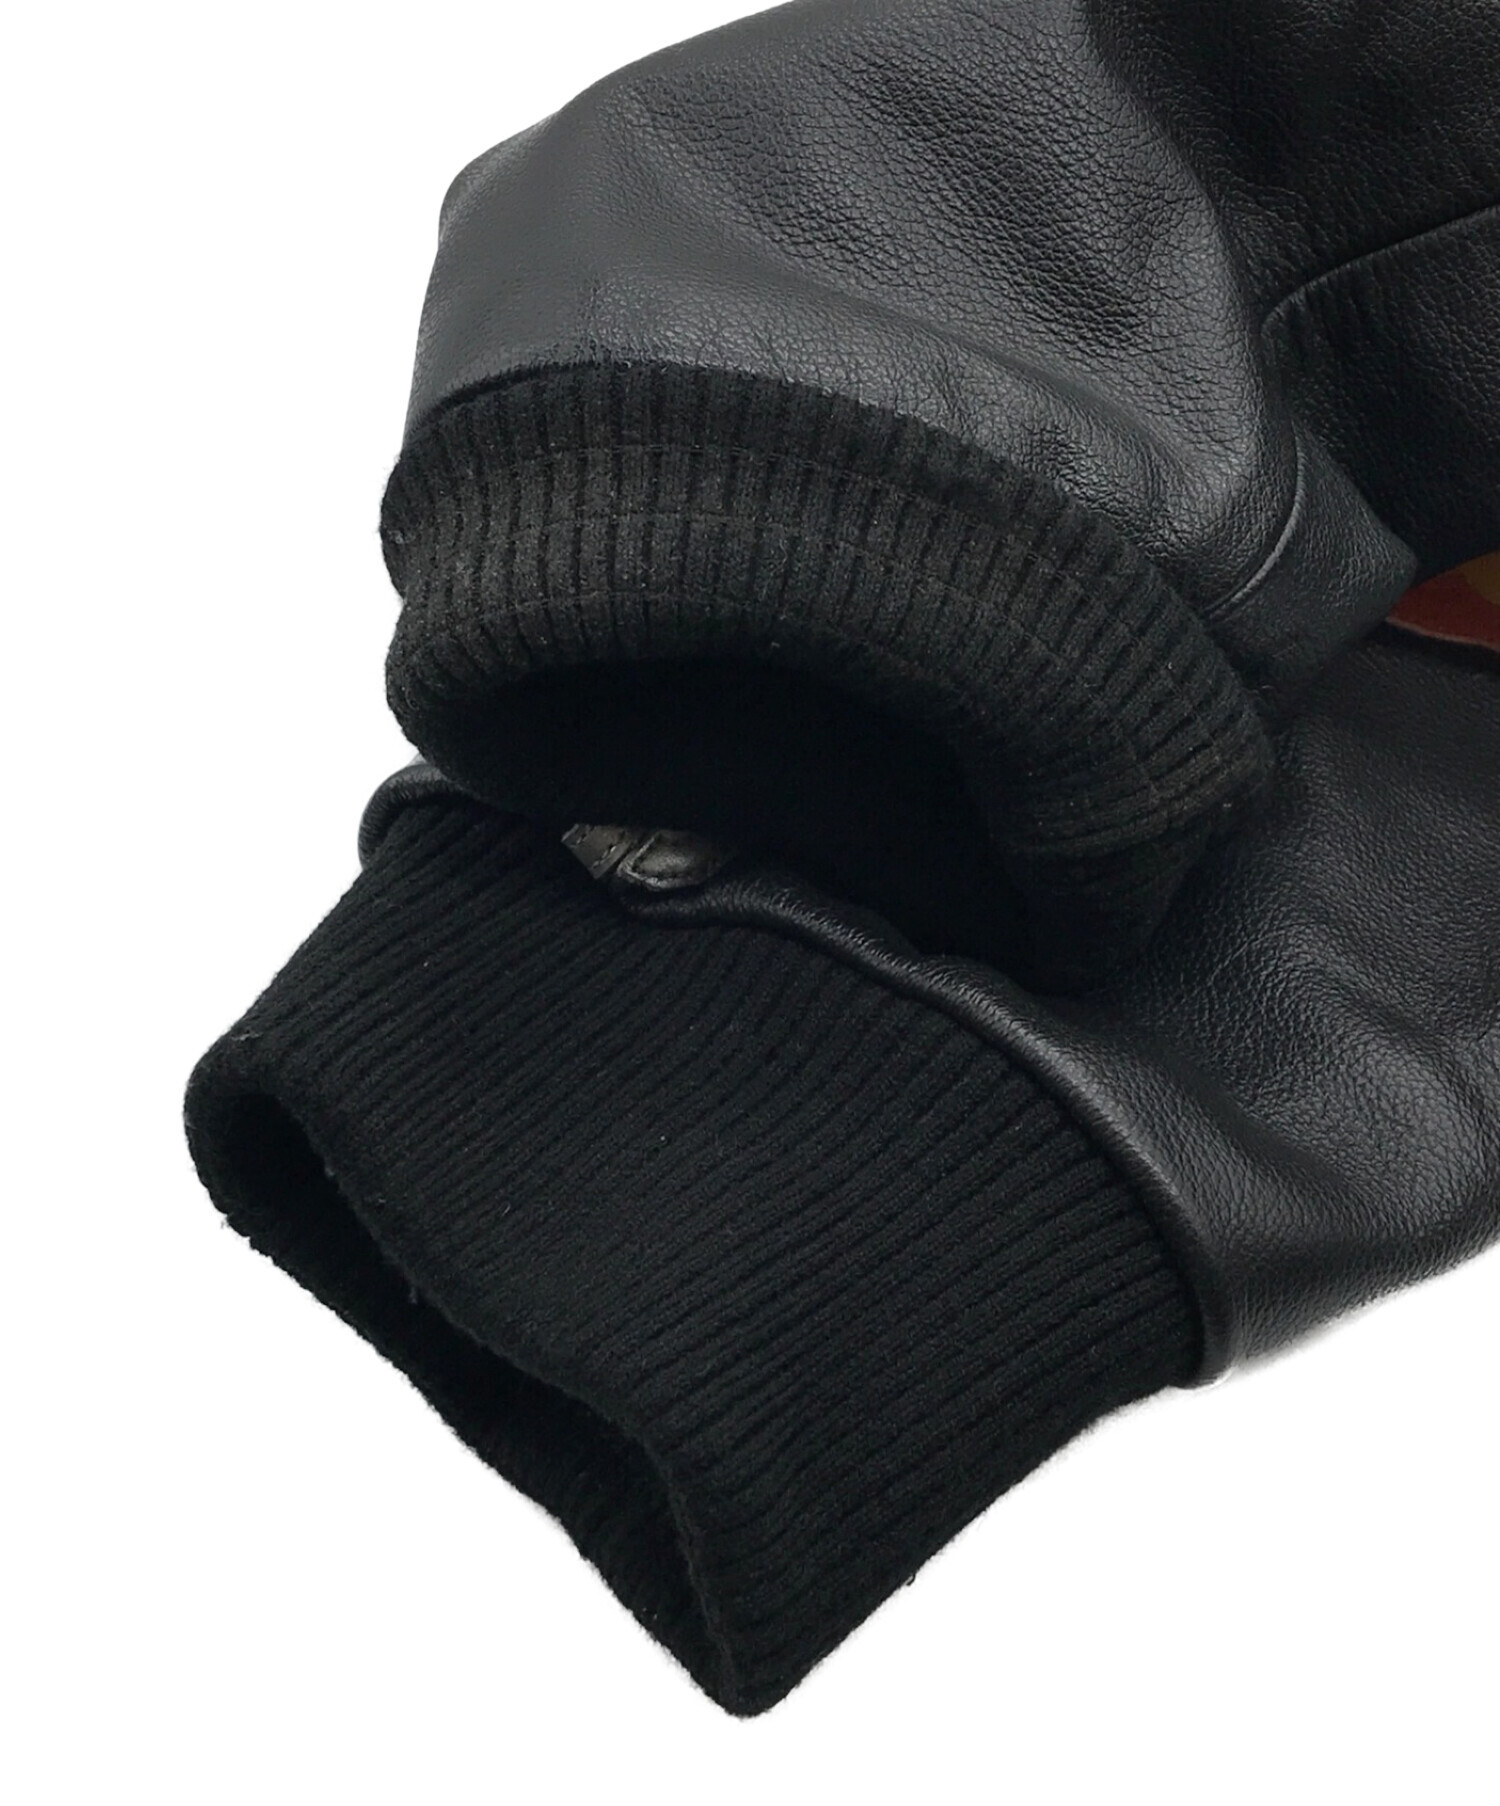 Supreme×VANSON (シュプリーム×バンソン) Leathers Ghost Rider Jacket ブラック サイズ:XL